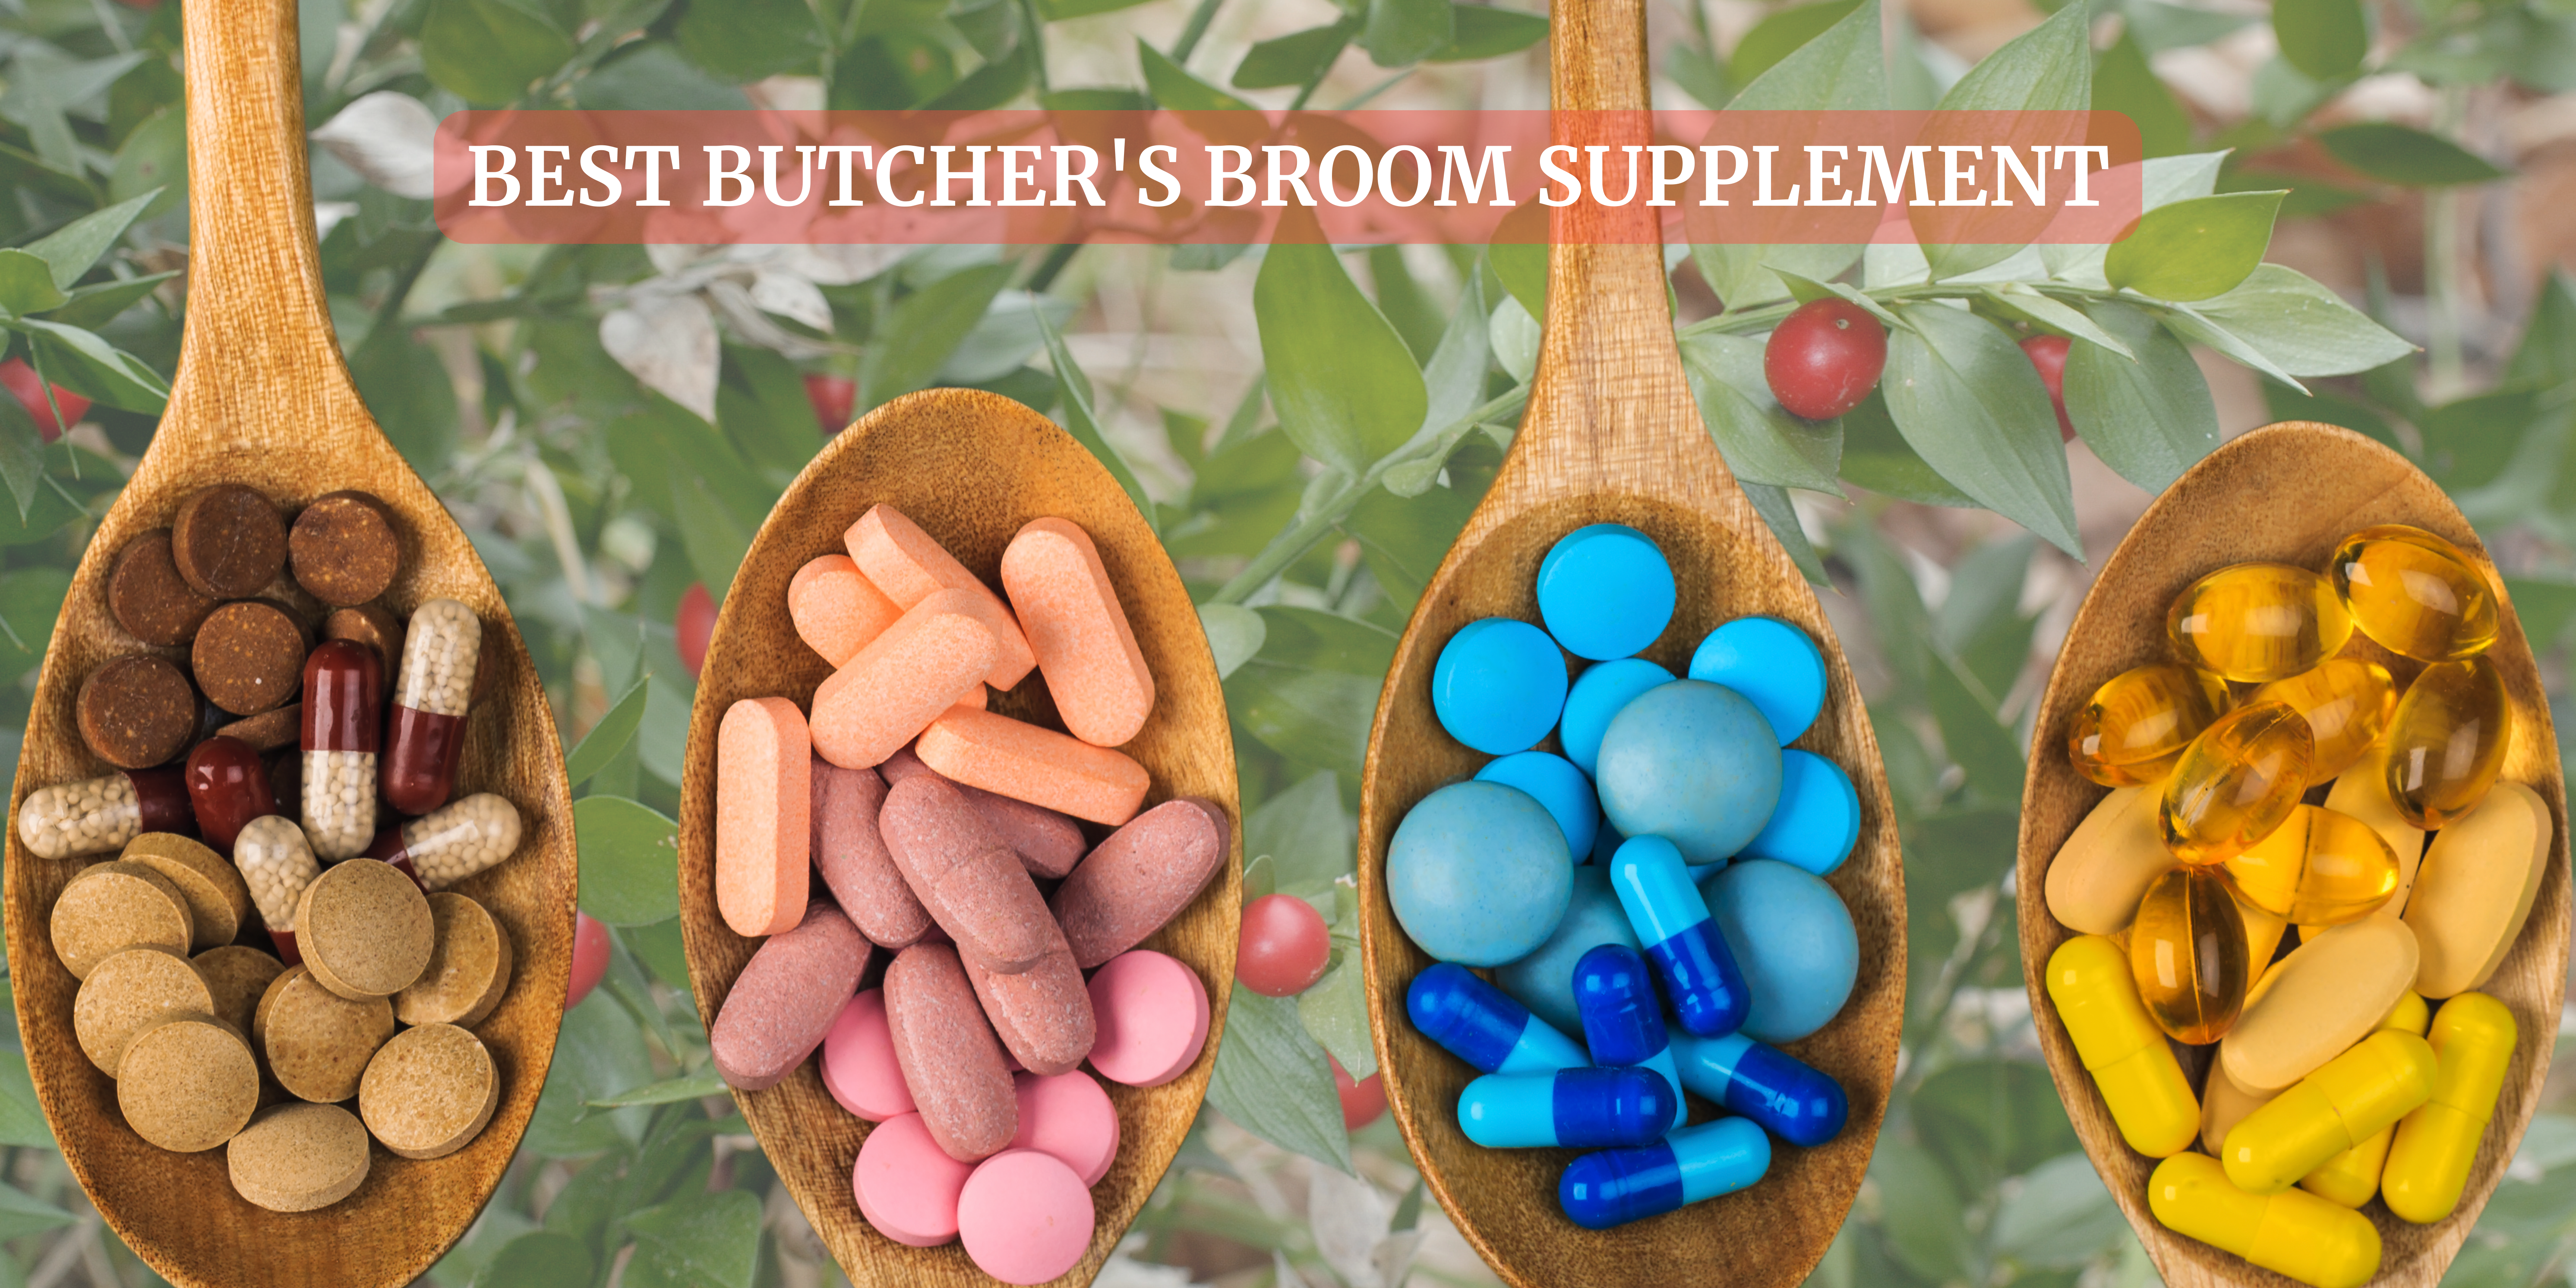 butcher's broom supplement in India